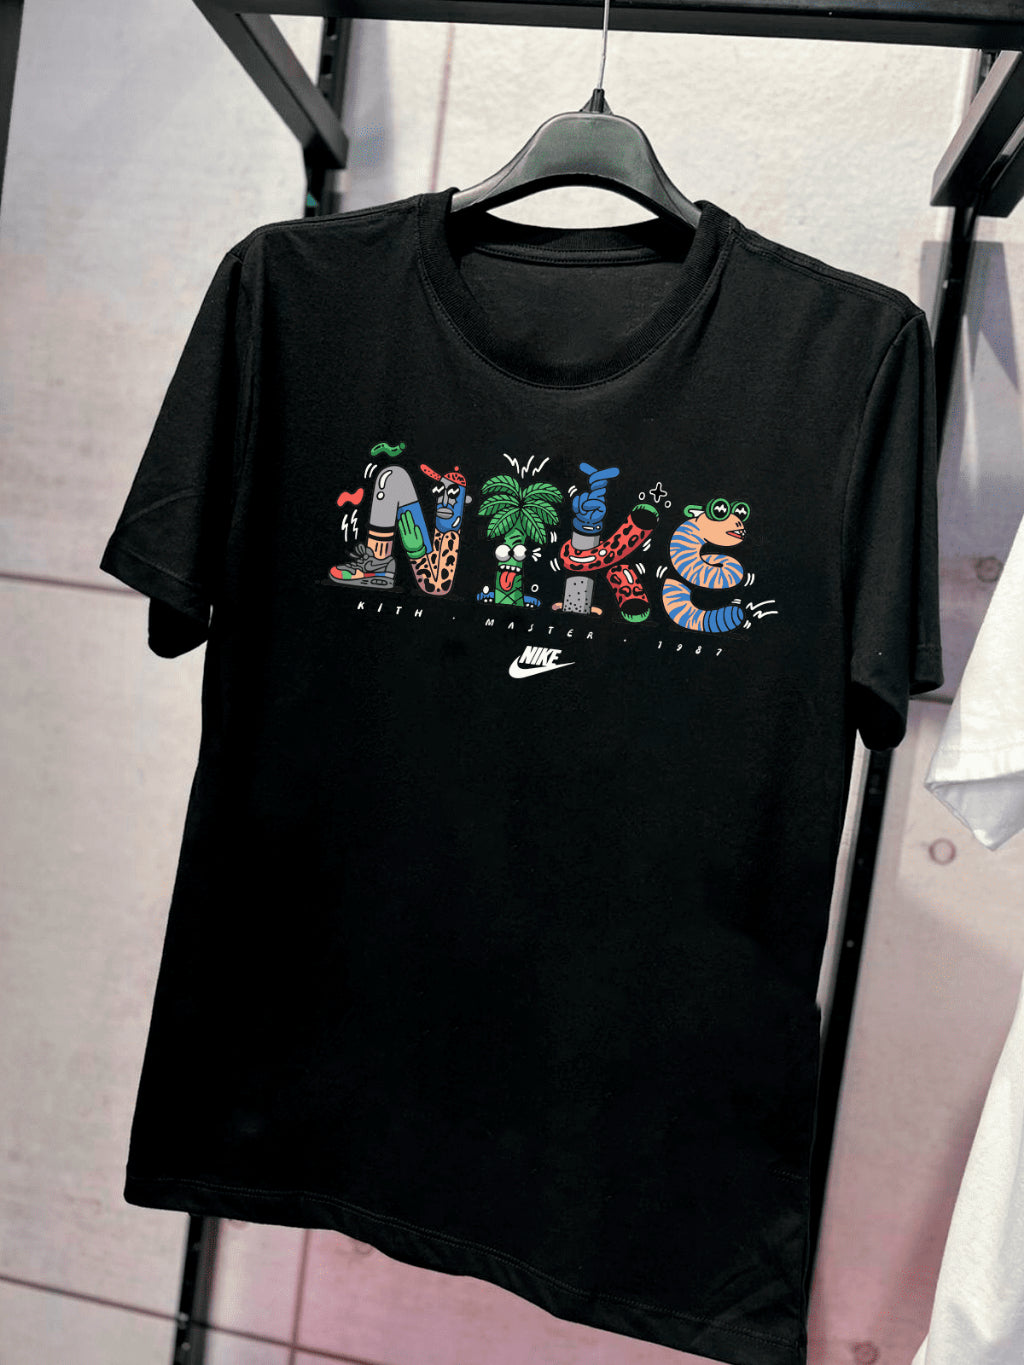 Camiseta Nk Kith Crazy Streetwear